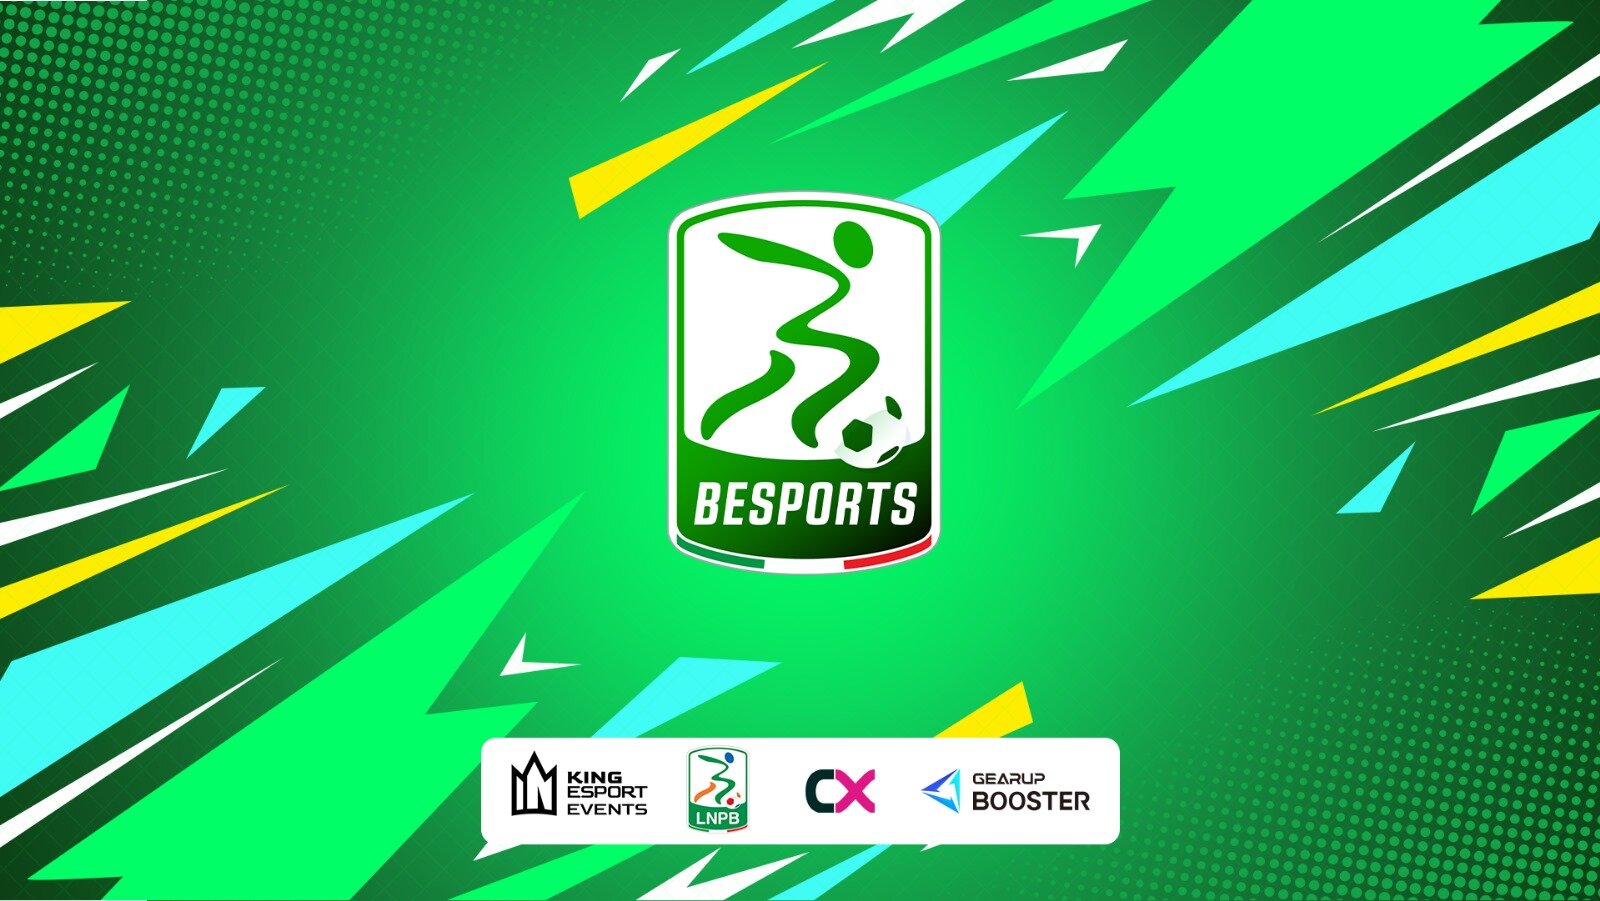 LNPB e King Esport presentano la 4^ edizione di BeSports